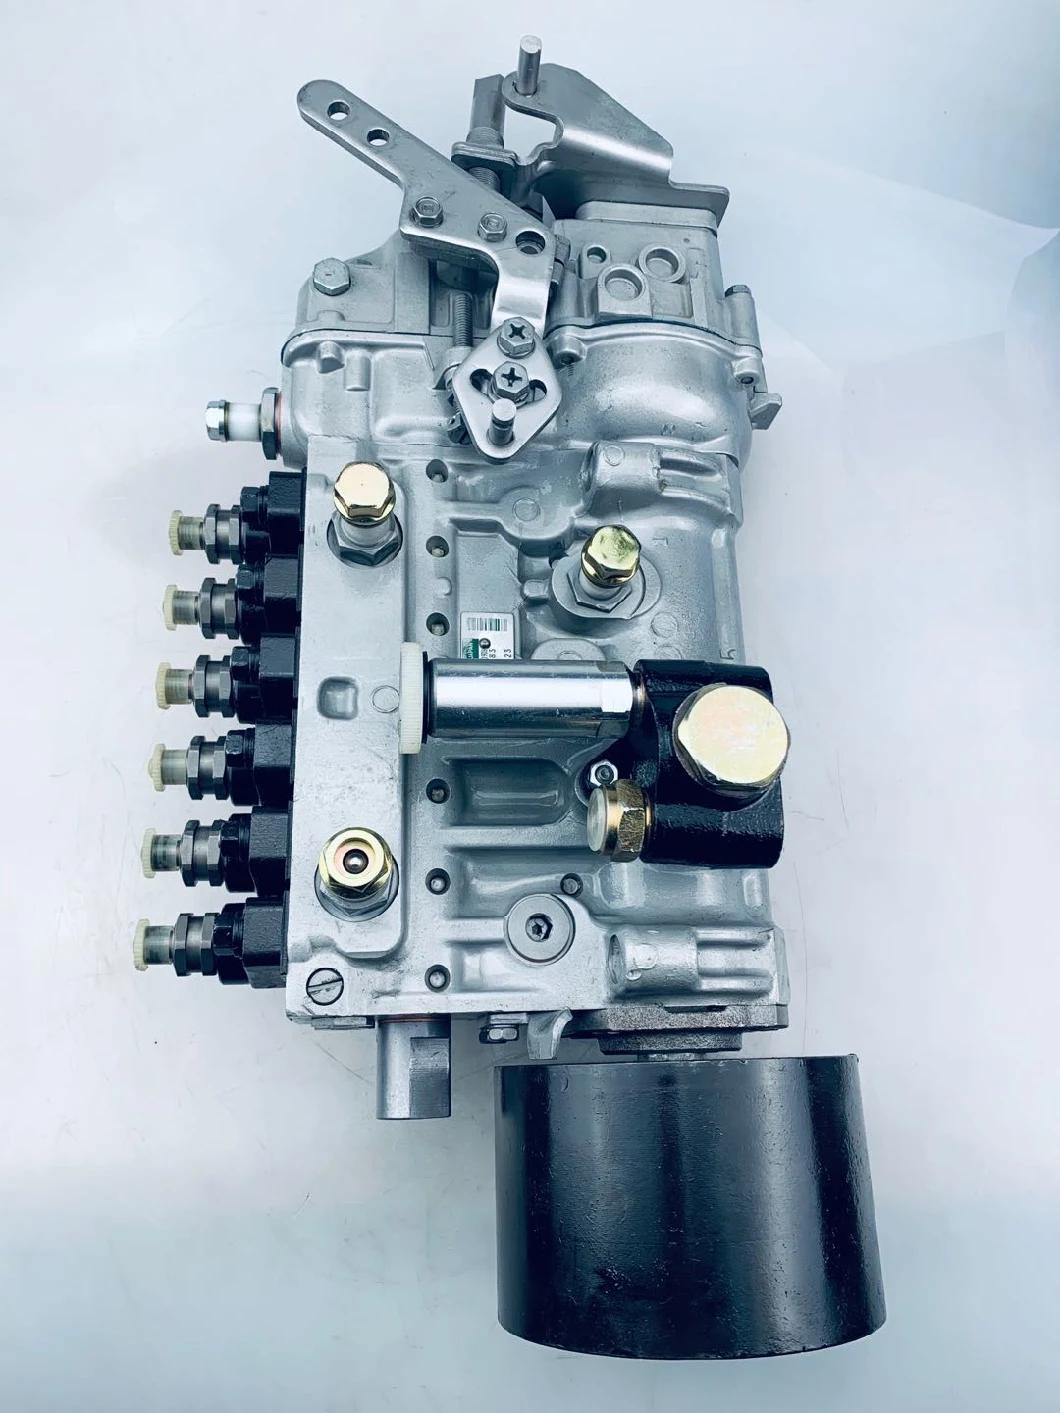 6D125e-1 Diesel Engine Parts Fuel Injection Pump 6150-71-1321 6150-71-1322 6150-71-1323